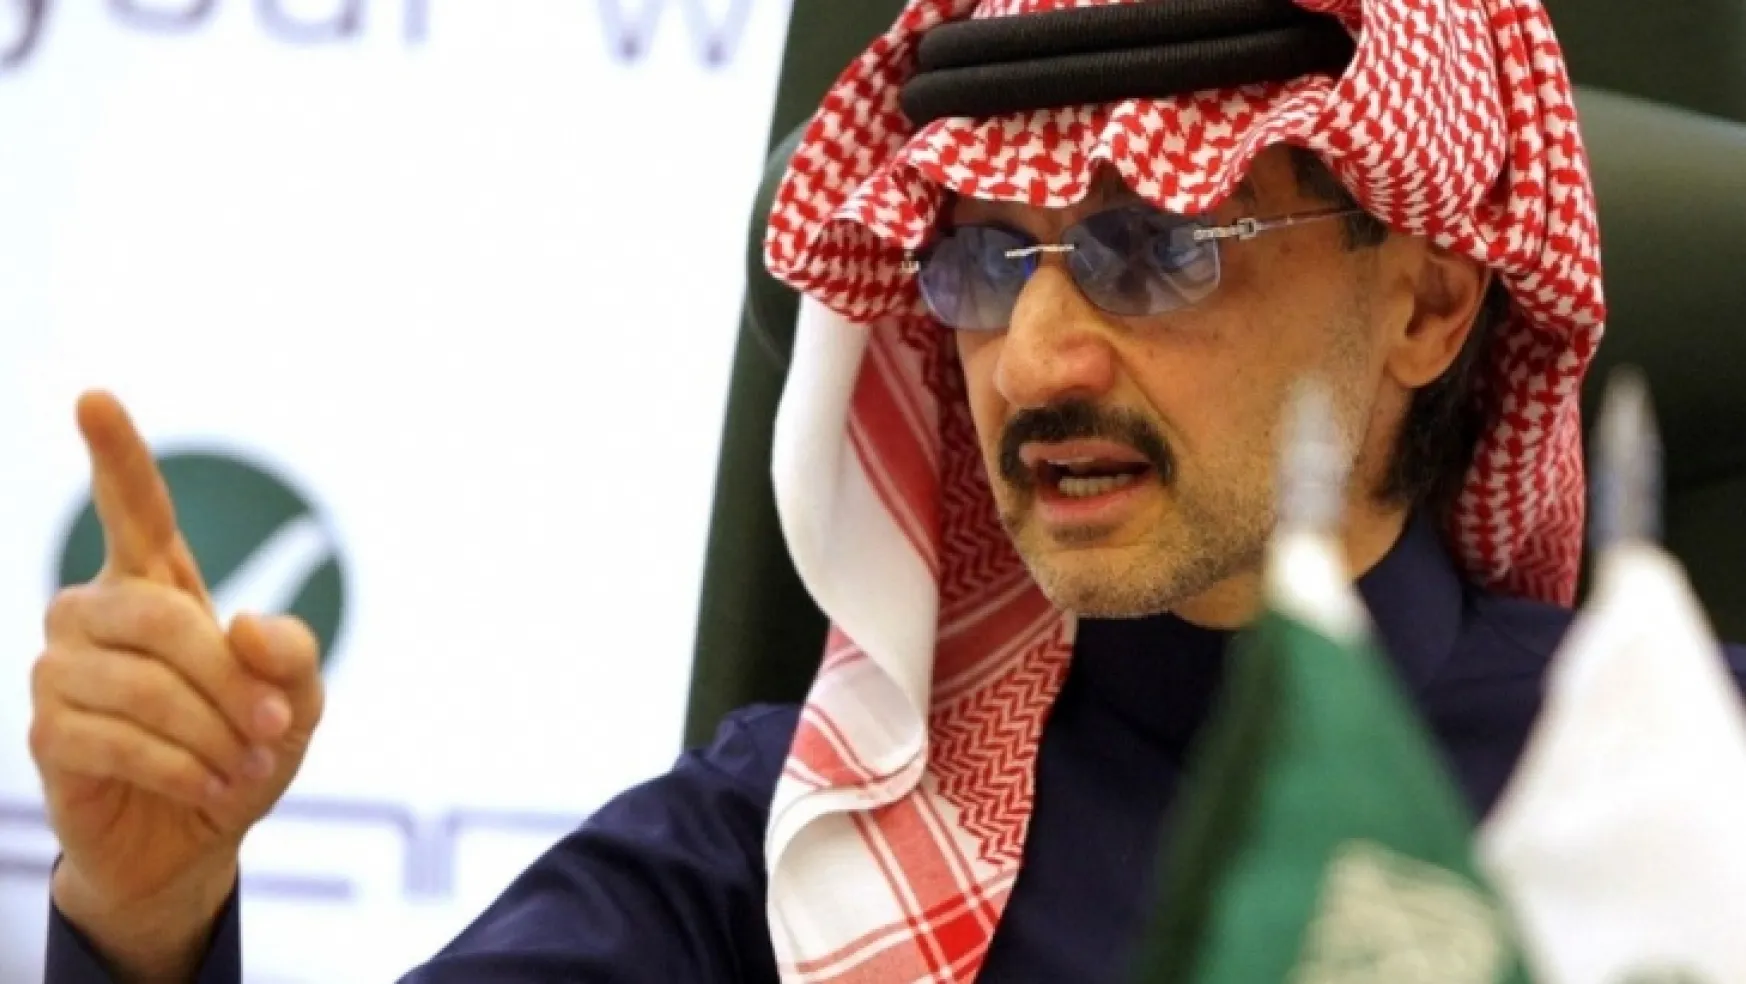 Prens El Velid aldığı Twitter hisselerini zararına sattı